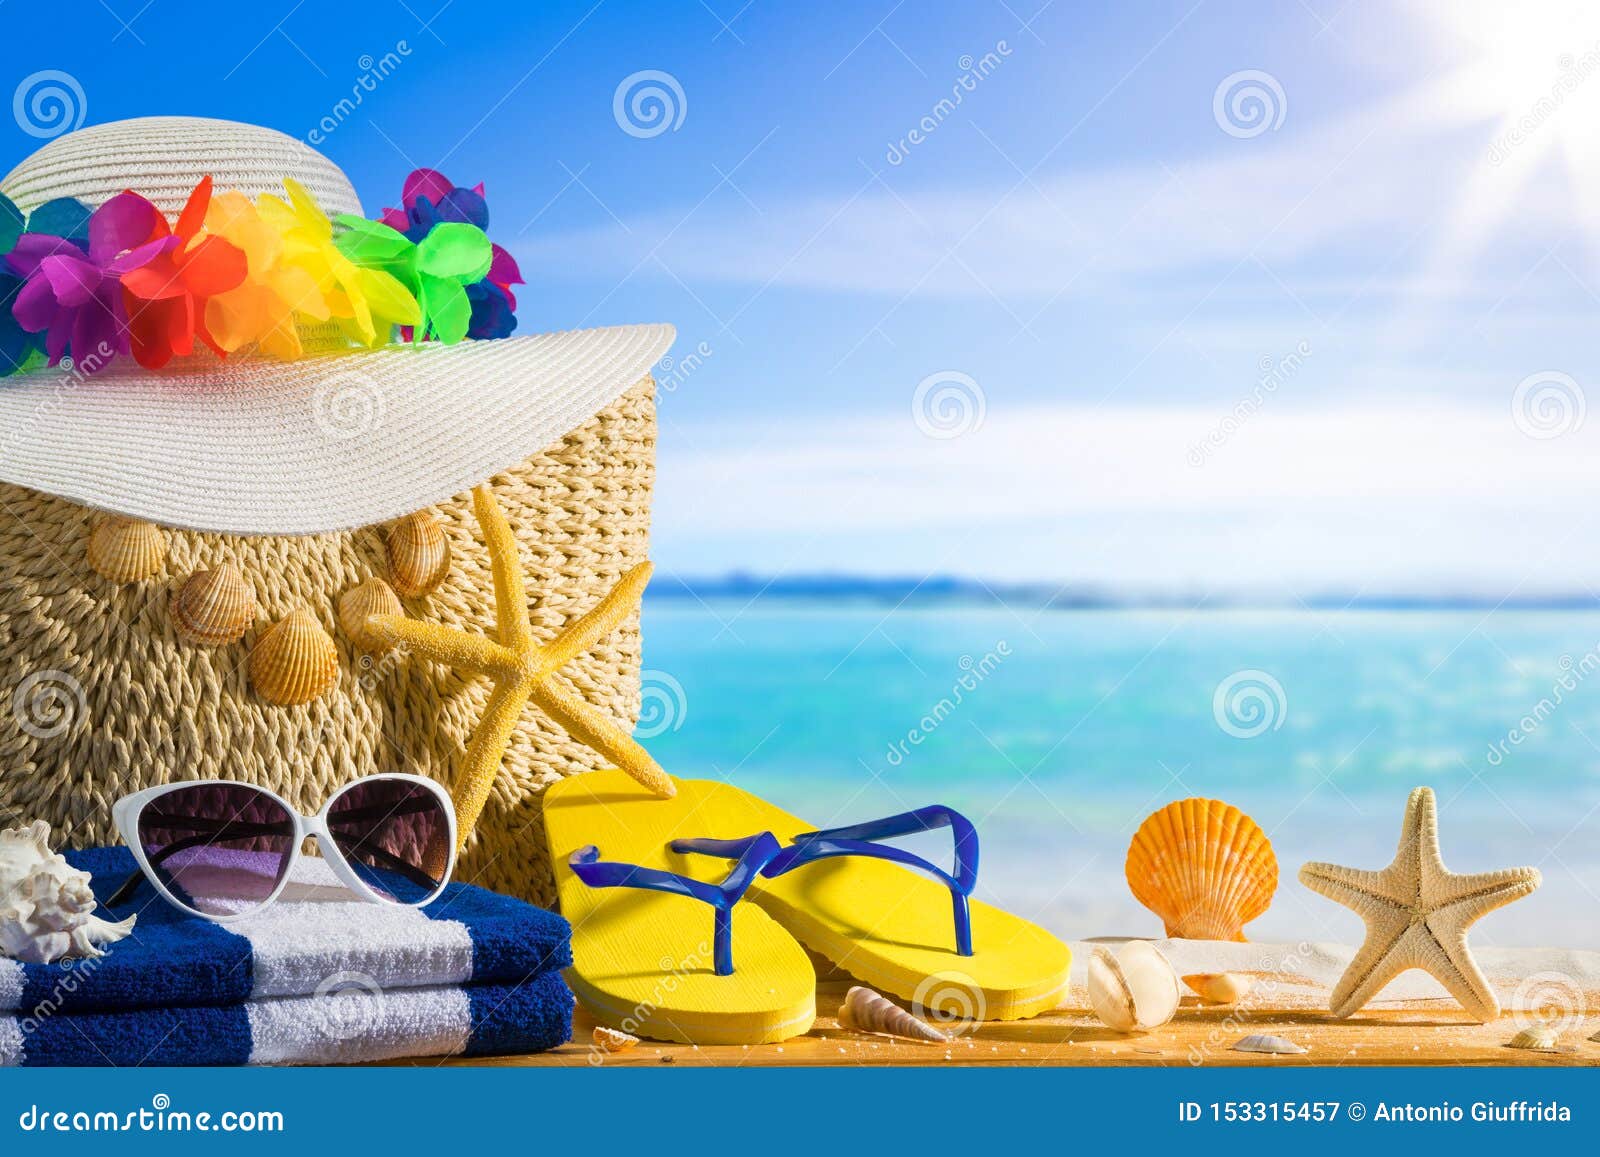 Concepto De Las Vacaciones Verano, Accesorios De La Playa En Blanca Imagen de archivo - Imagen de bandera, 153315457